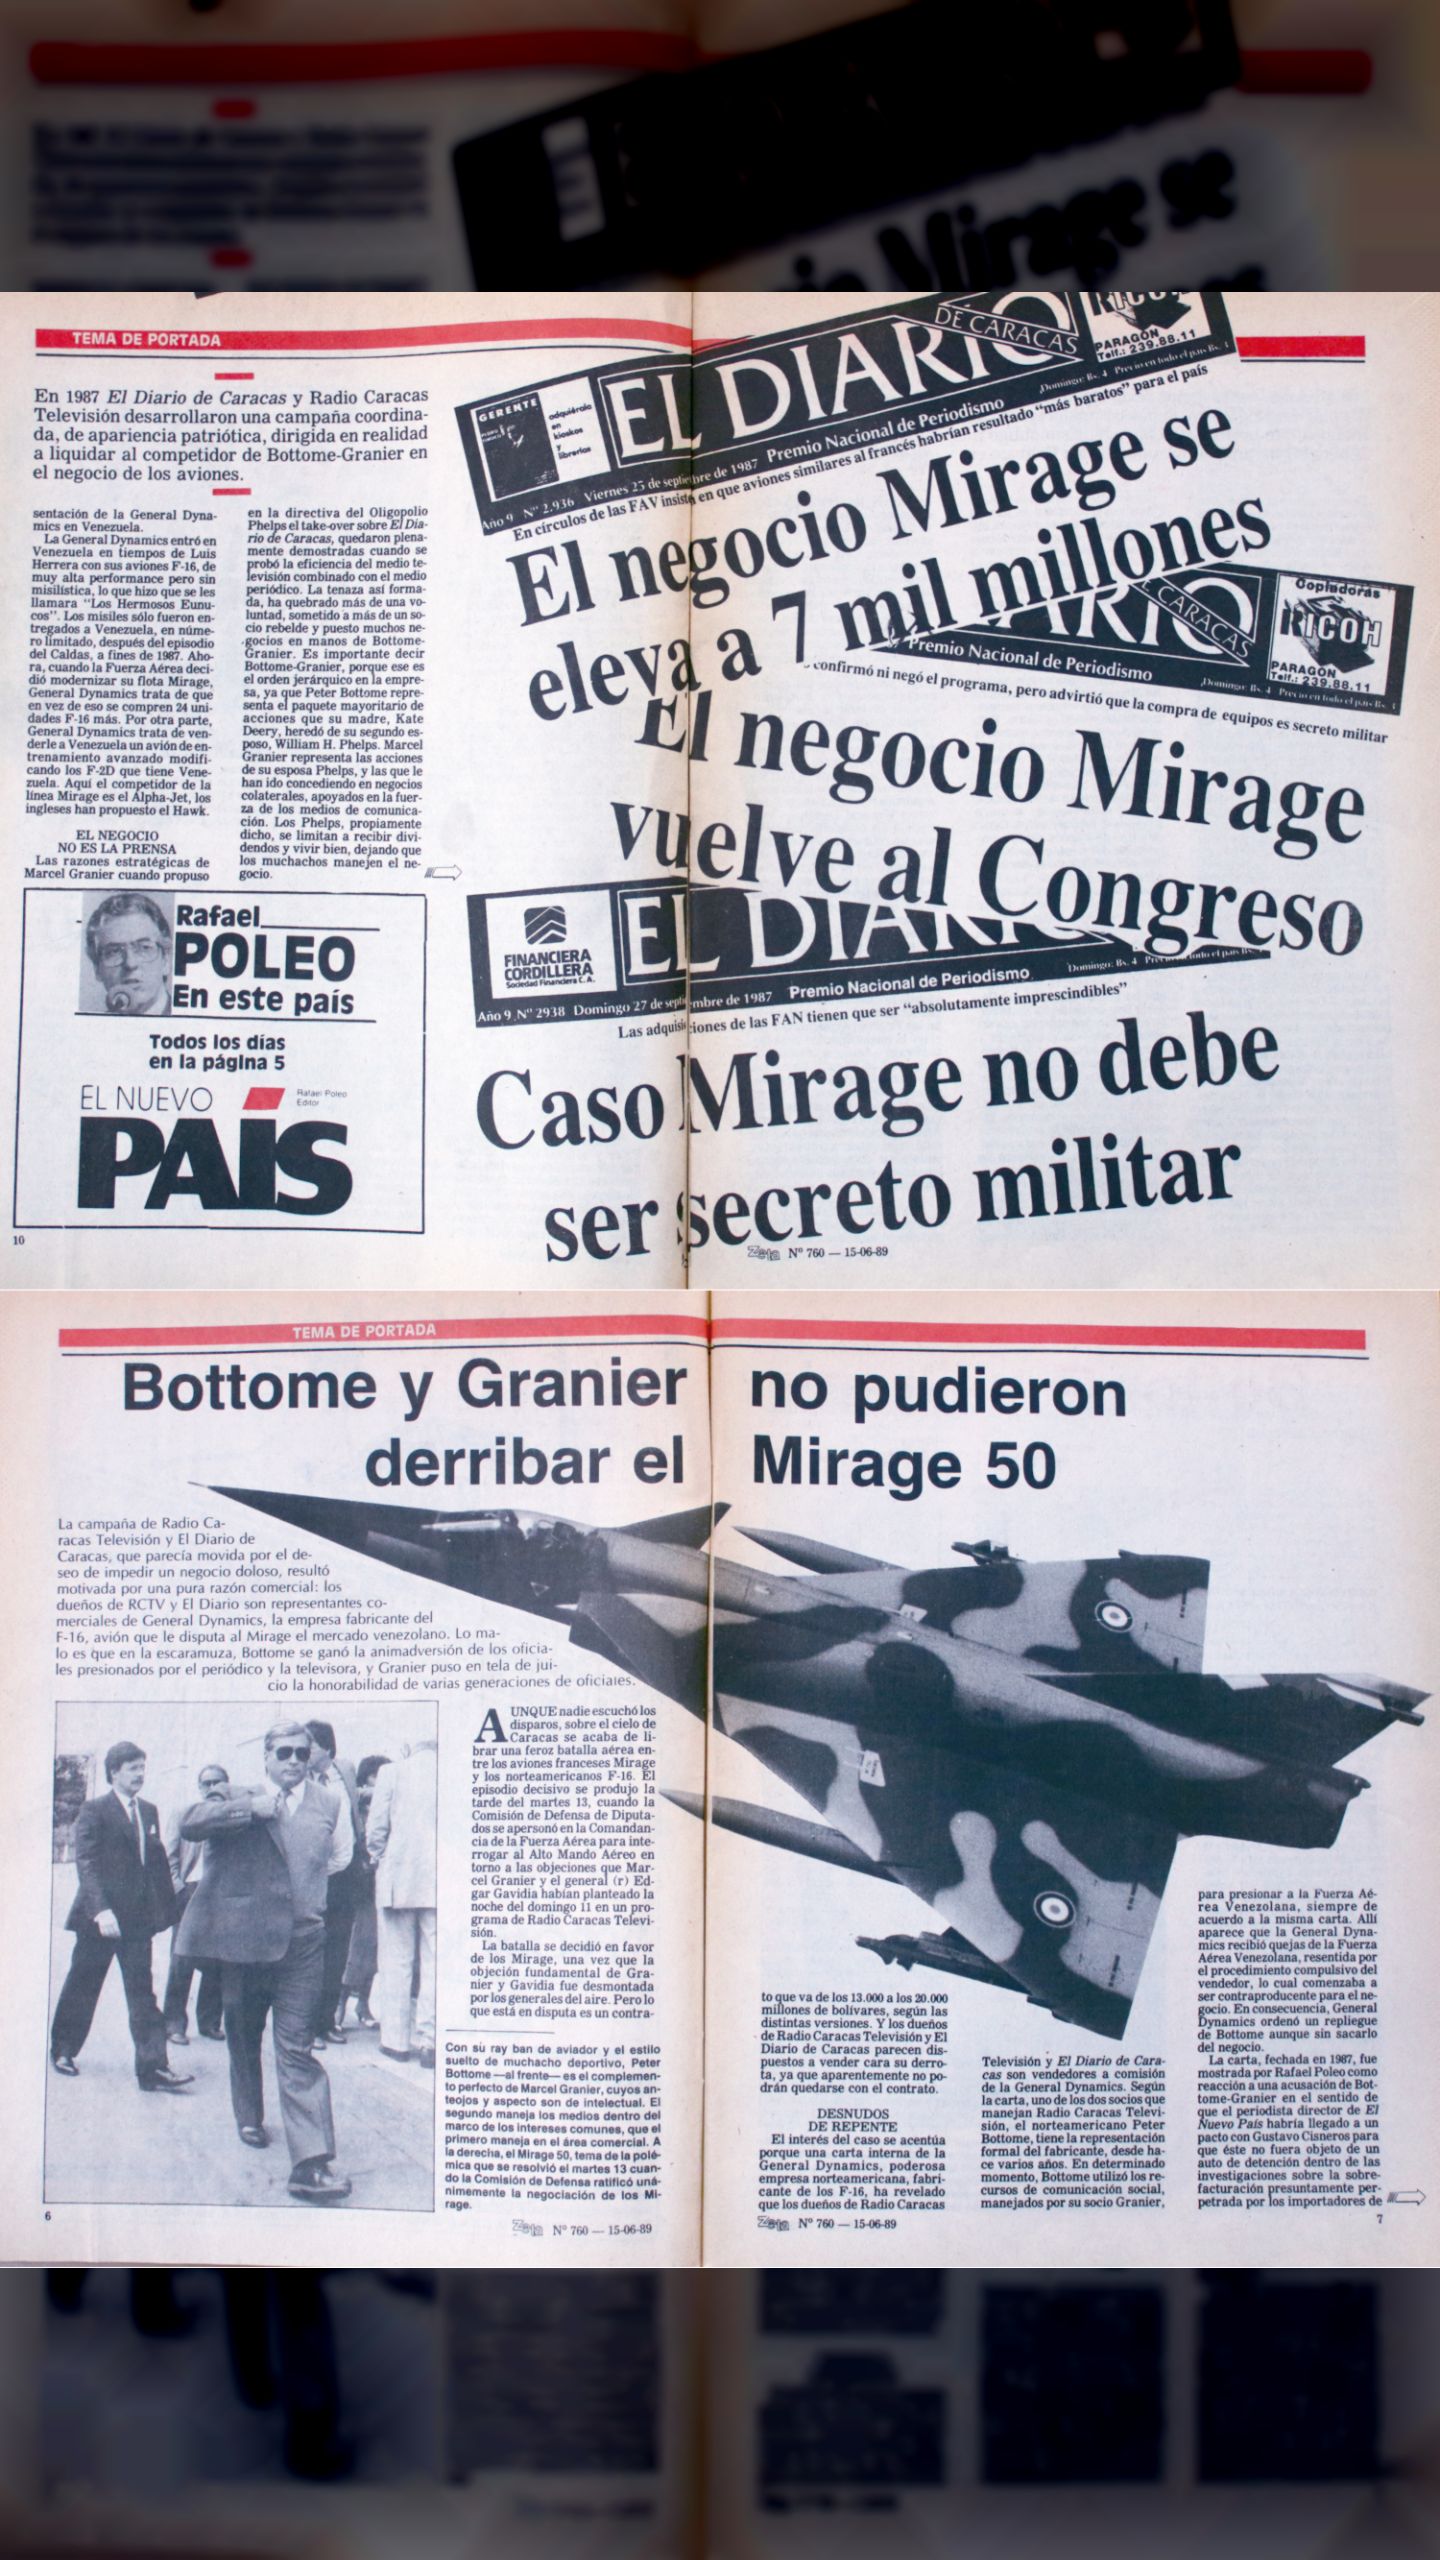 El Diario de Caracas y RCTV lanzan campaña mediática contra la fuerza aérea venezolana (Revista Zeta, 15 al 26 de junio 1989)